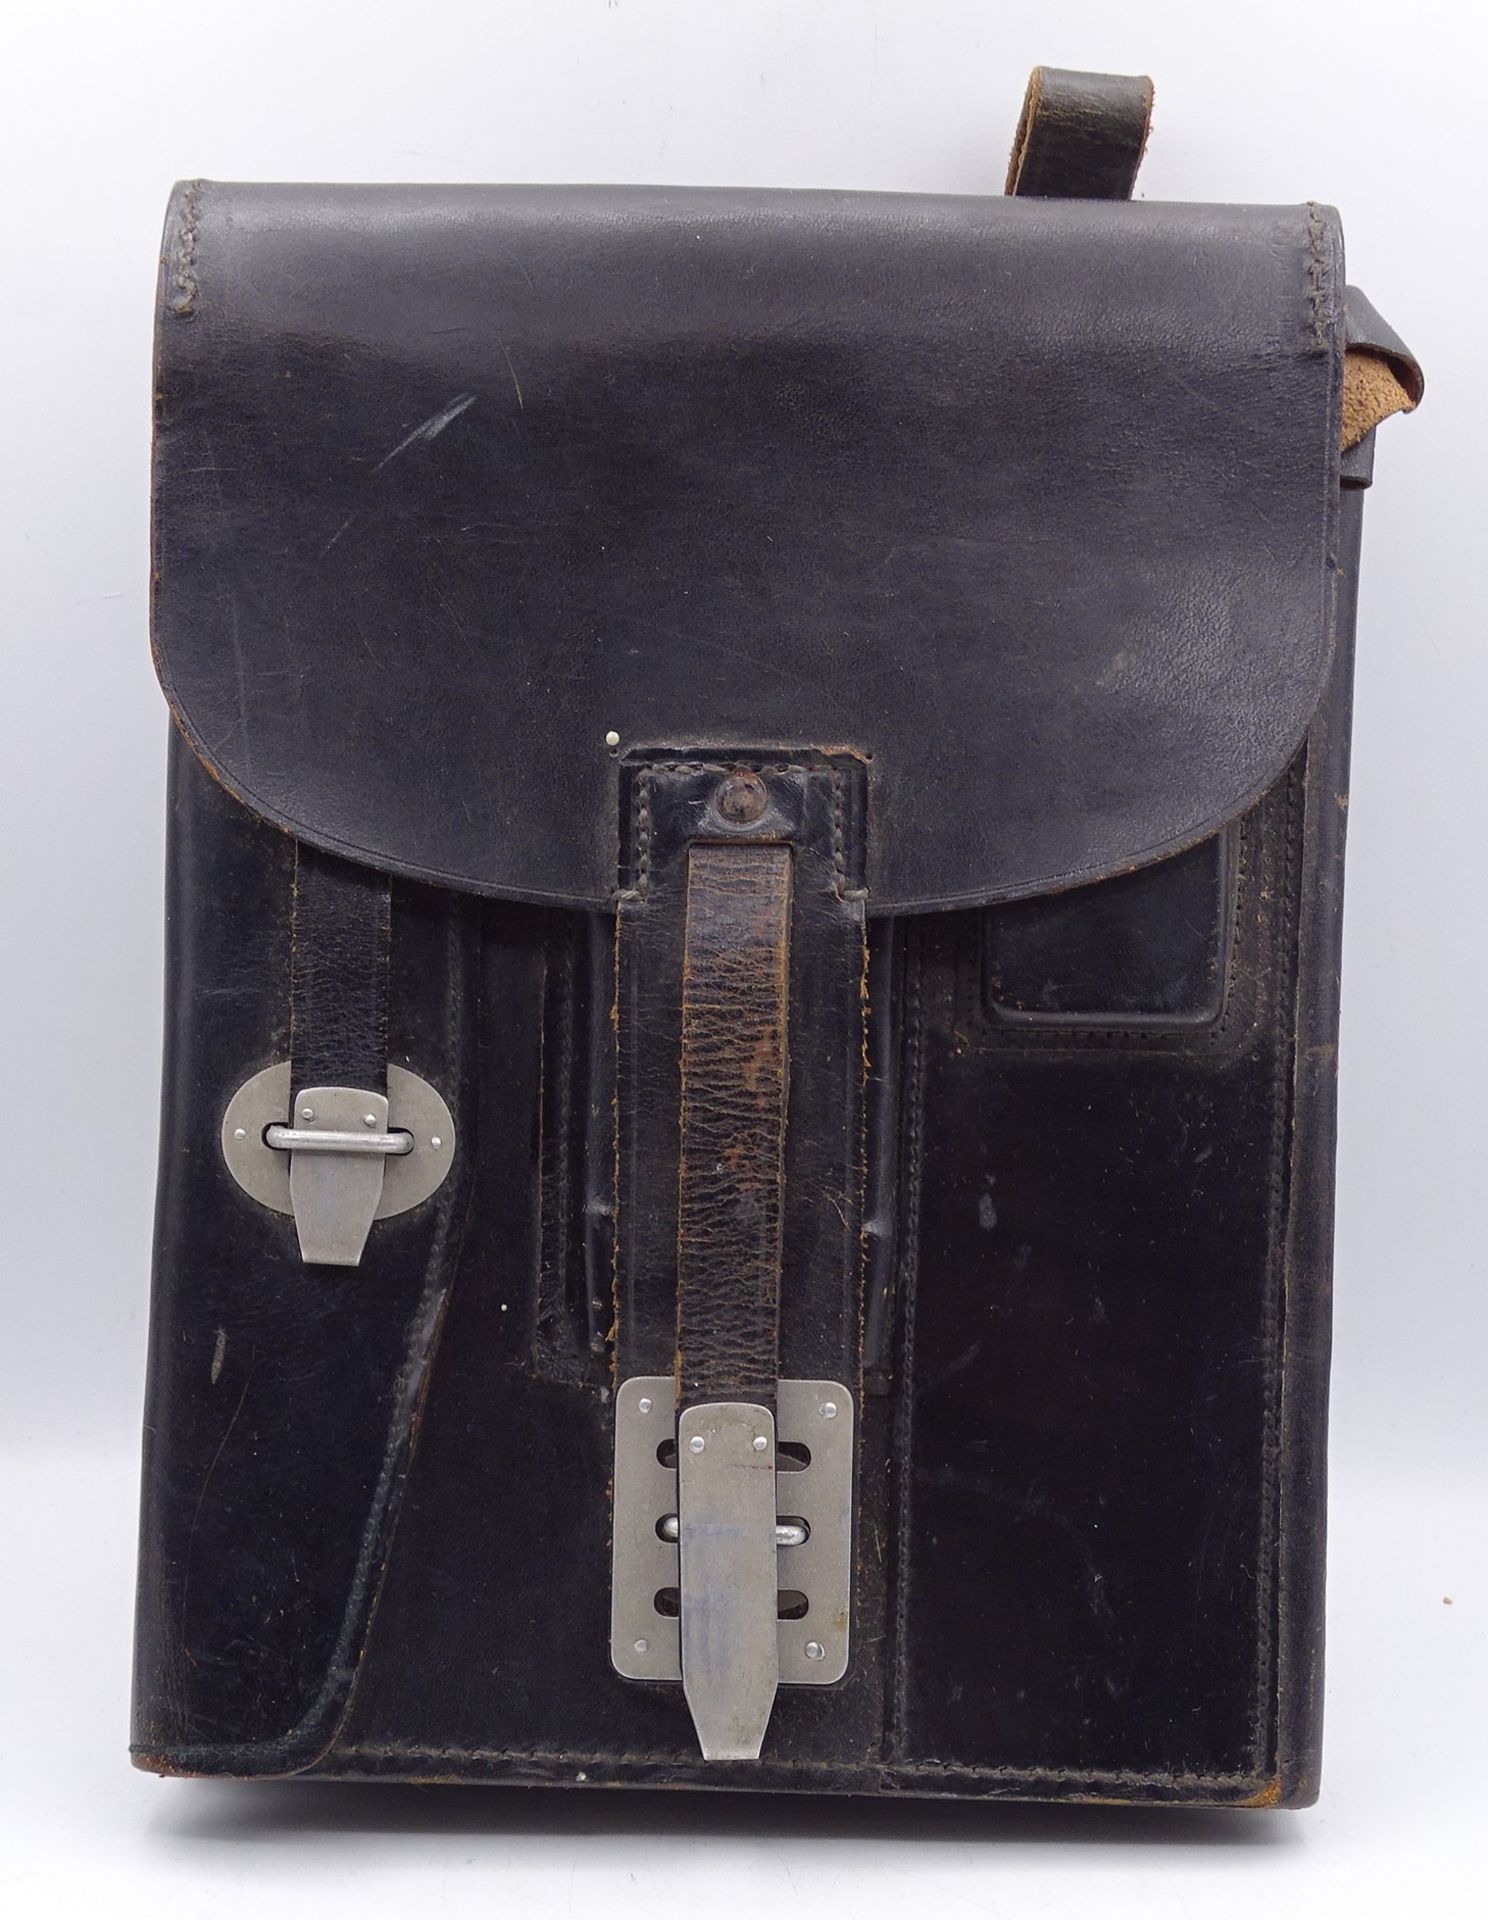 gr. Leder-Kartentasche, Mego-Berlin, 1961, aufklappbar, gut erhalten, 26x19 cm